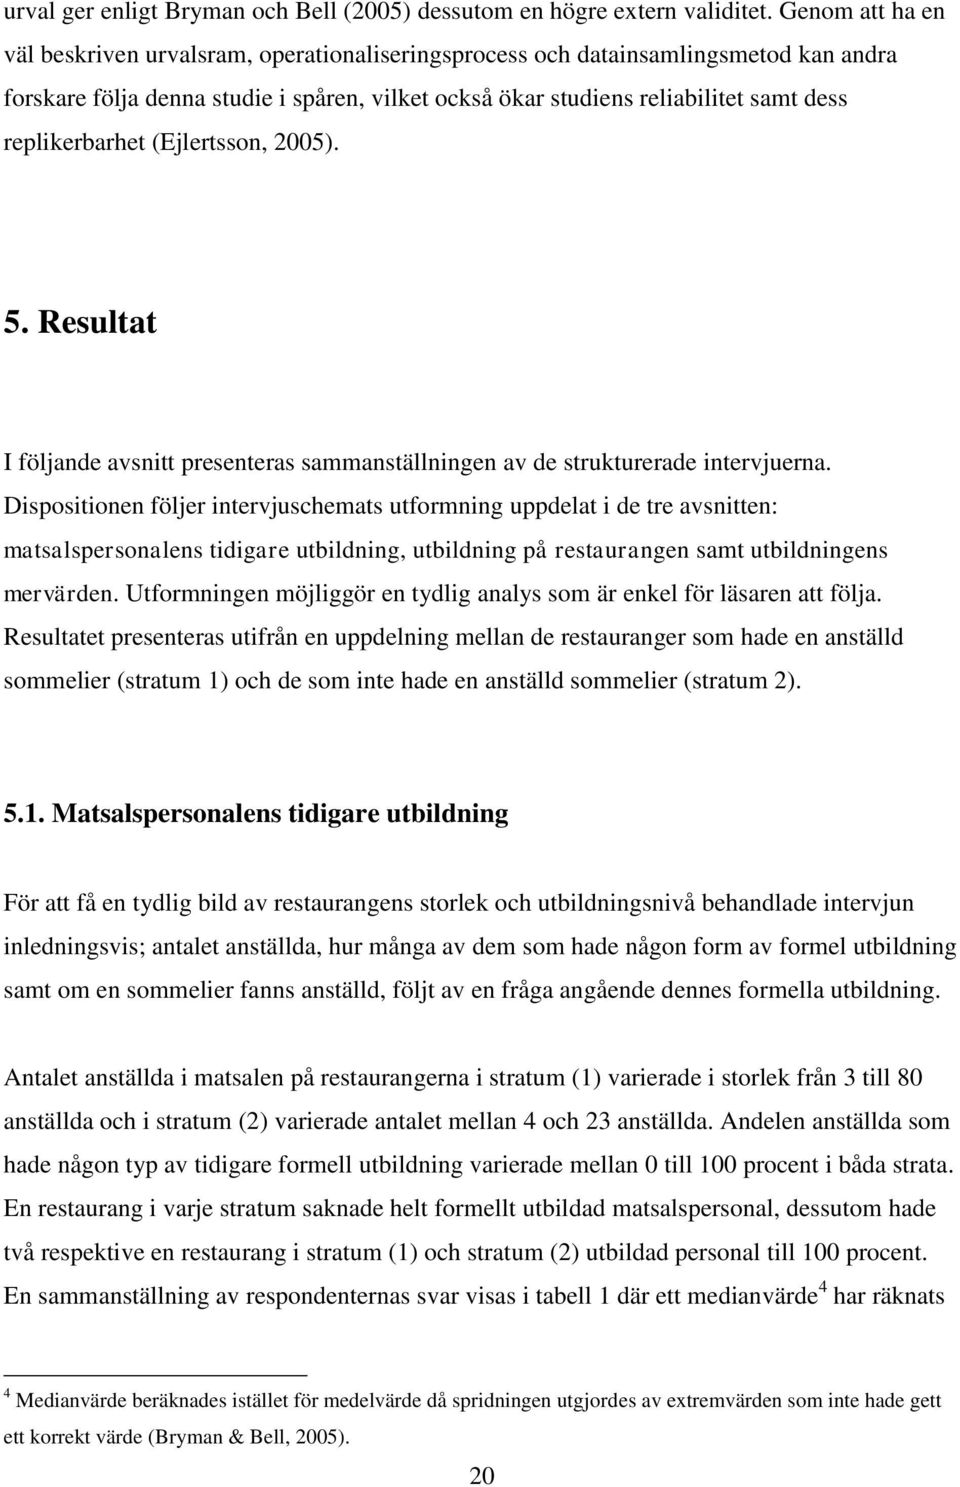 replikerbarhet (Ejlertsson, 2005). 5. Resultat I följande avsnitt presenteras sammanställningen av de strukturerade intervjuerna.